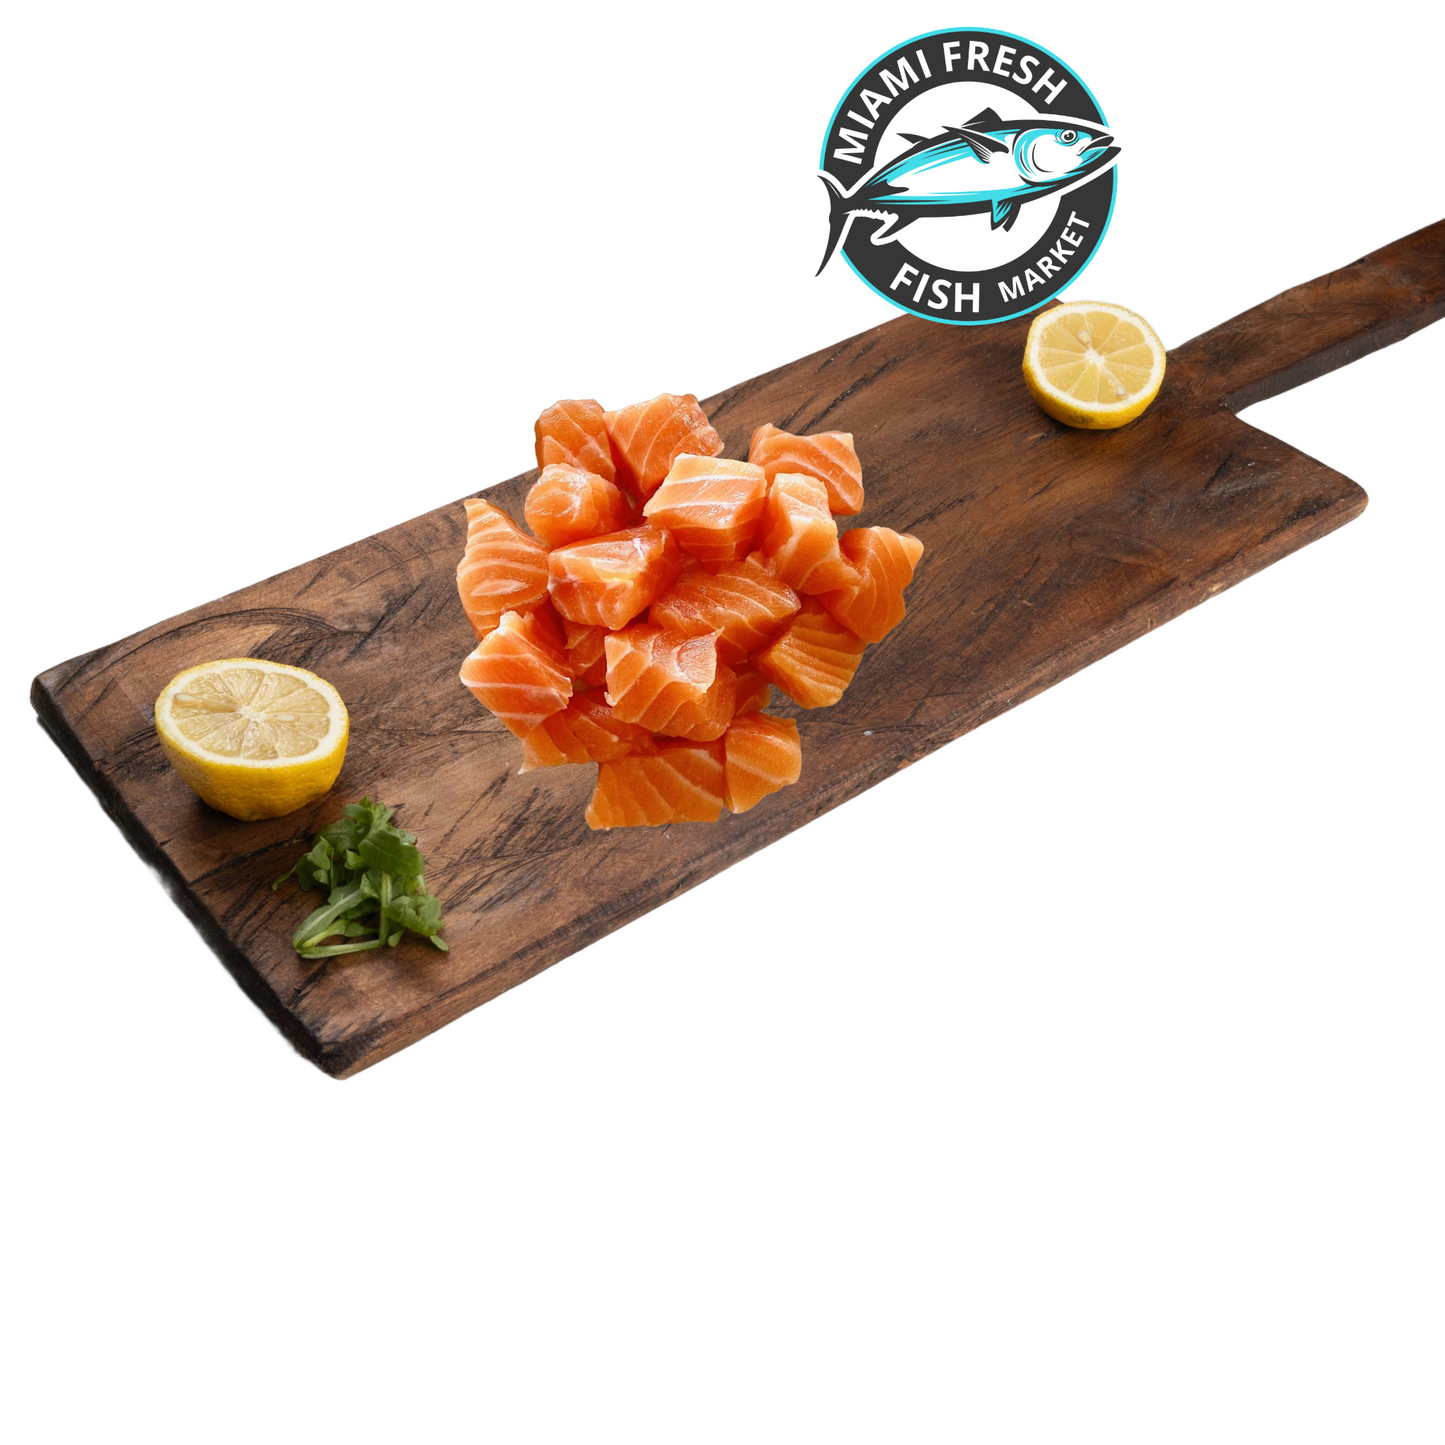 Sushi Grade Fish Kit Salmon & Tuna Hamachi Mix